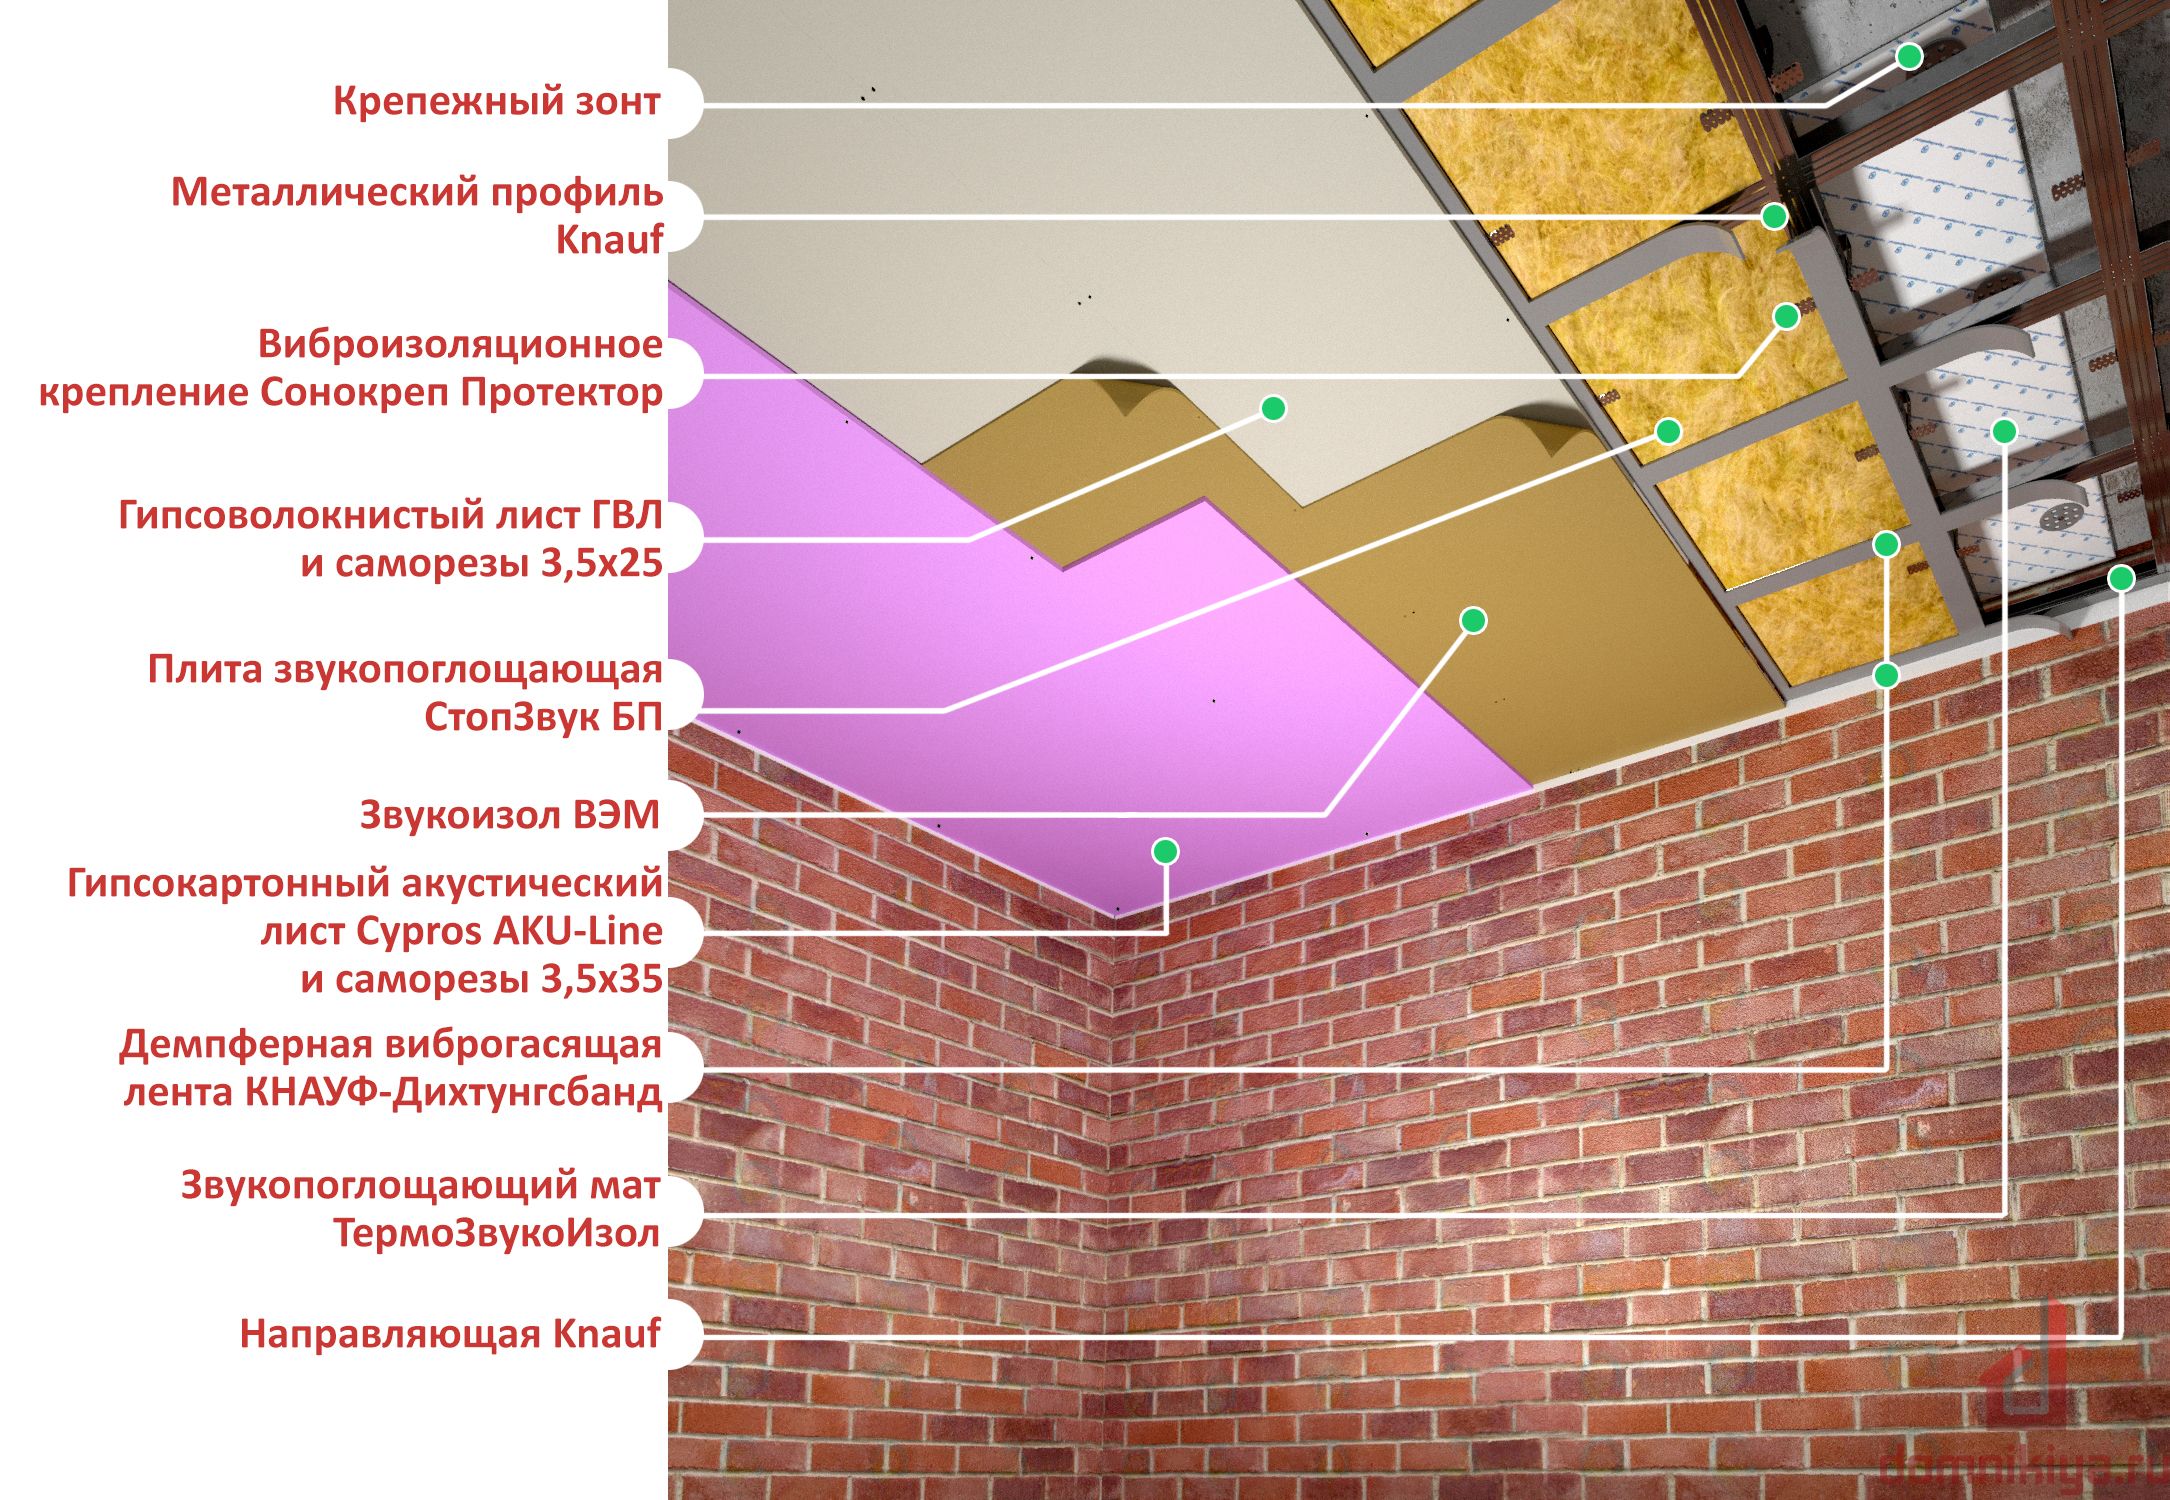 Как сделать звукоизоляцию потолка в квартире под натяжной потолок